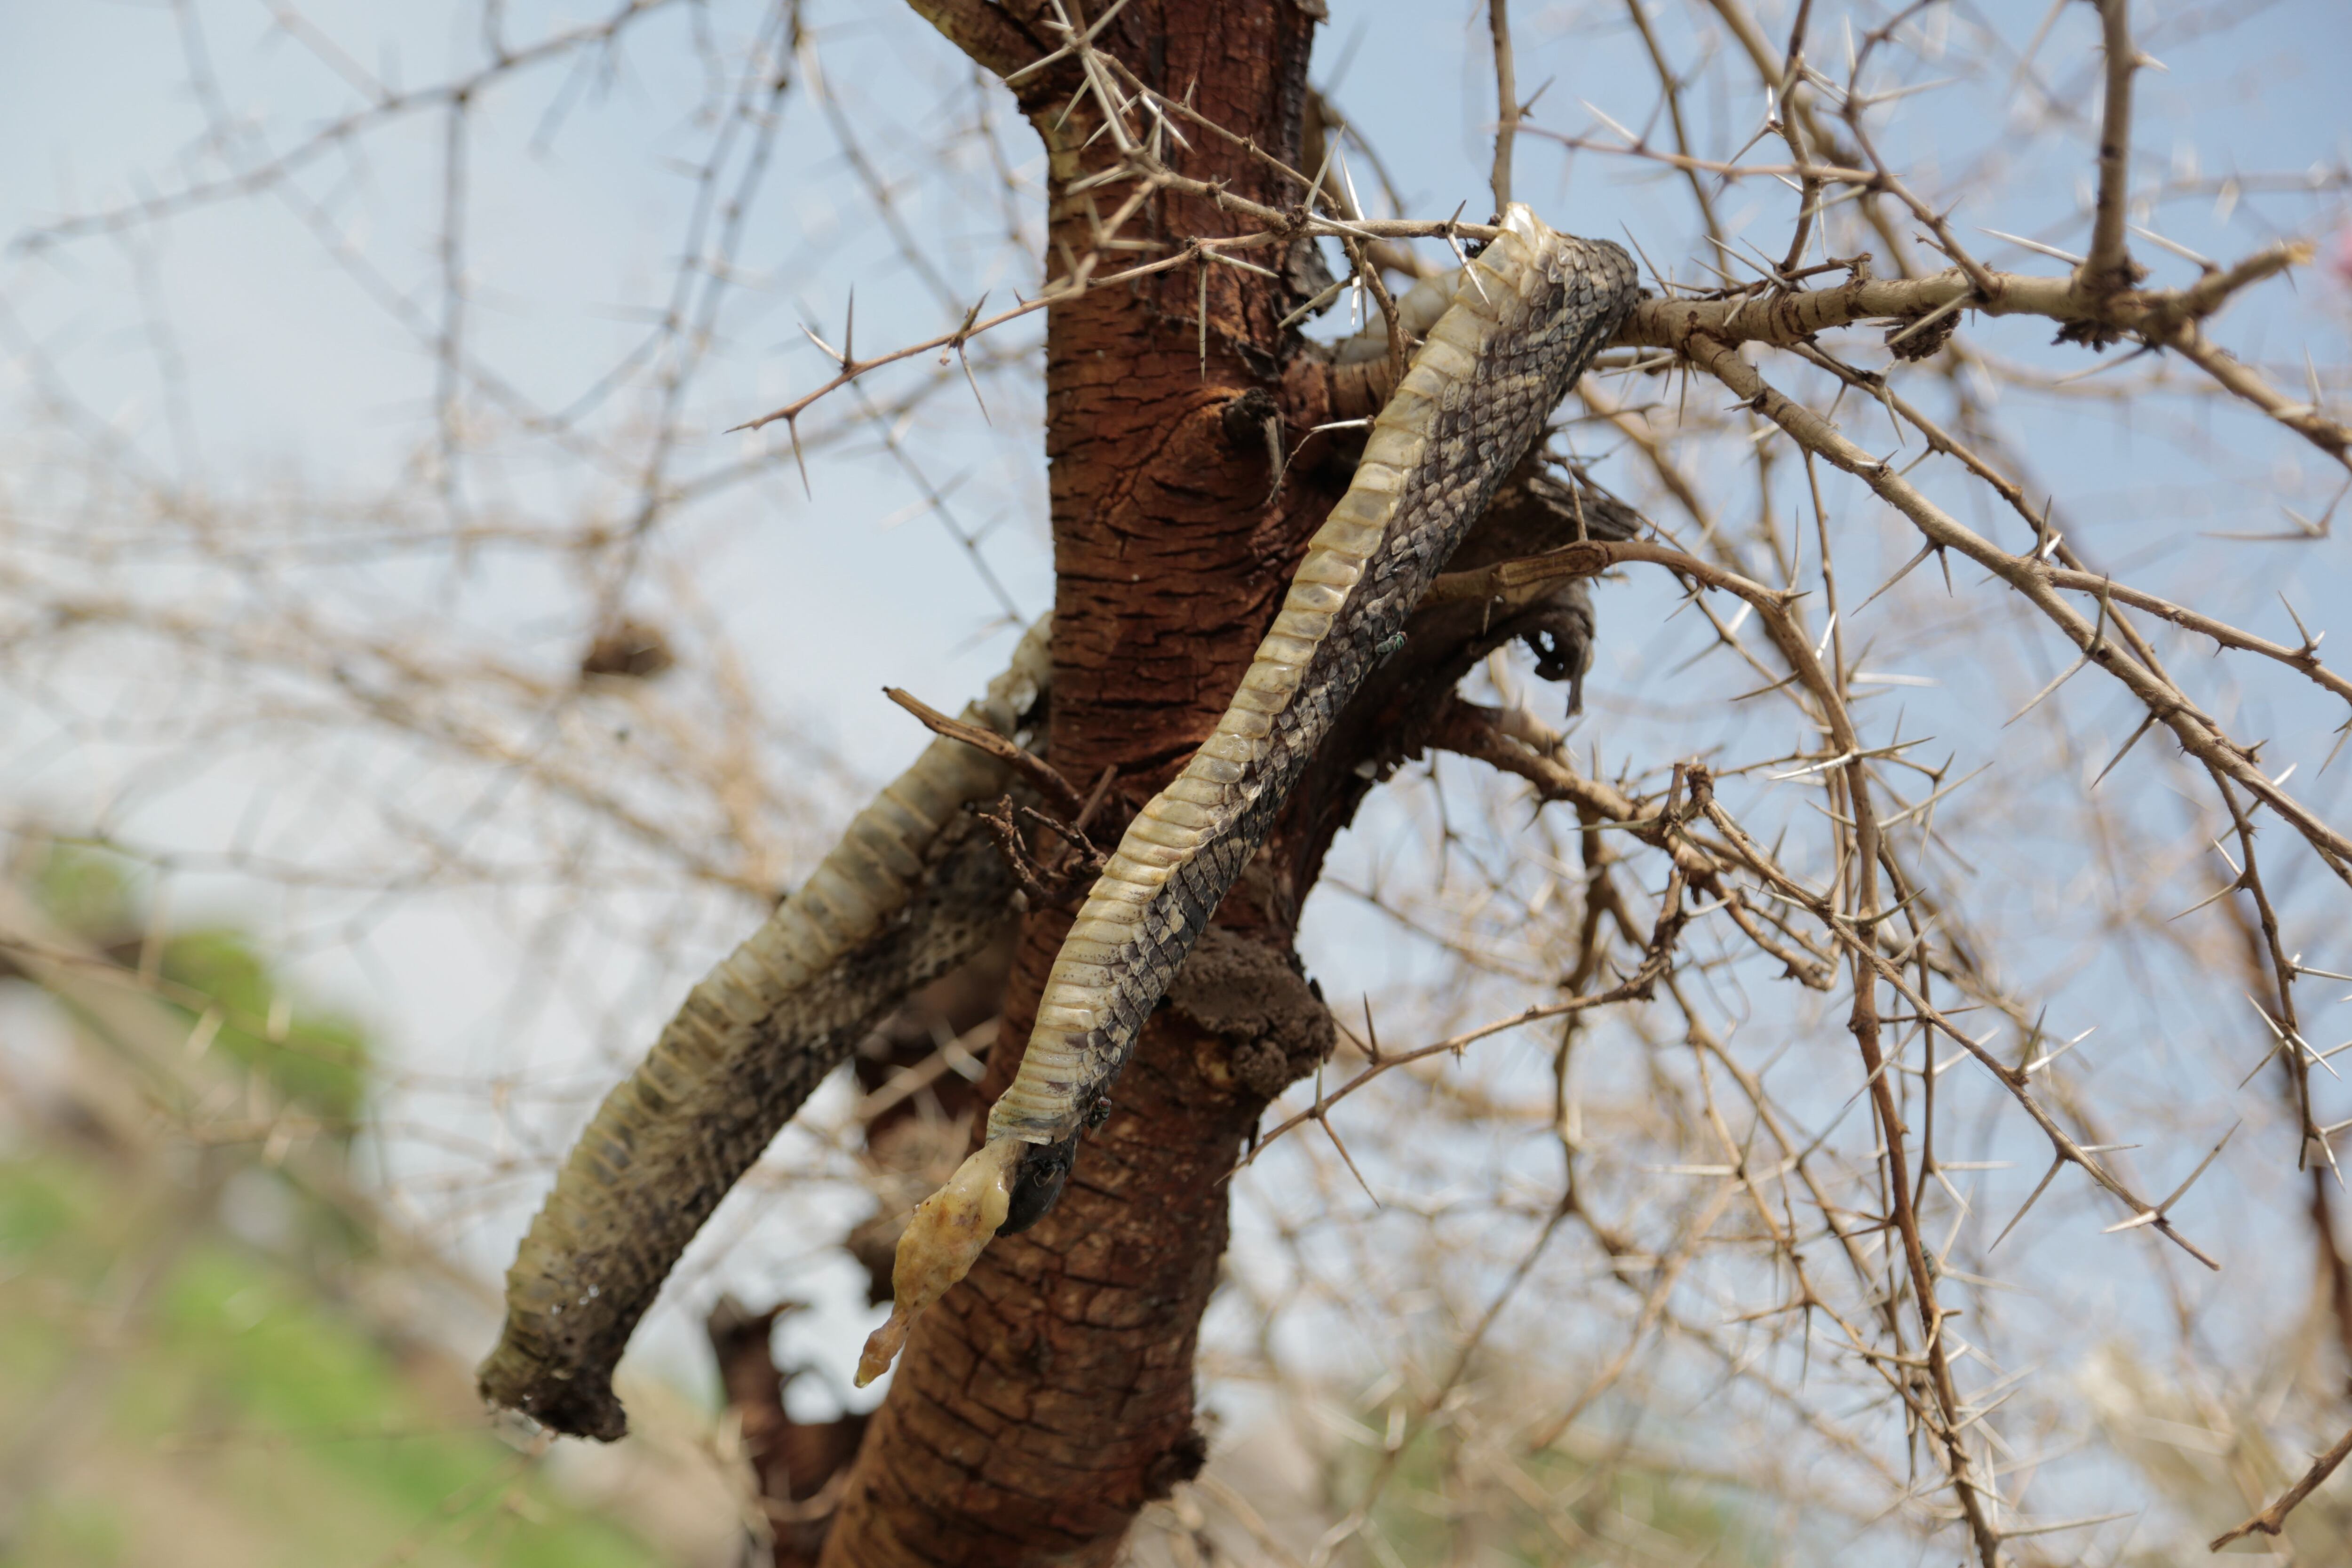 Como superstición, en Sudán del Sur es habitual colgar las serpientes muertas en los árboles para evitar que vuelvan a la vida.